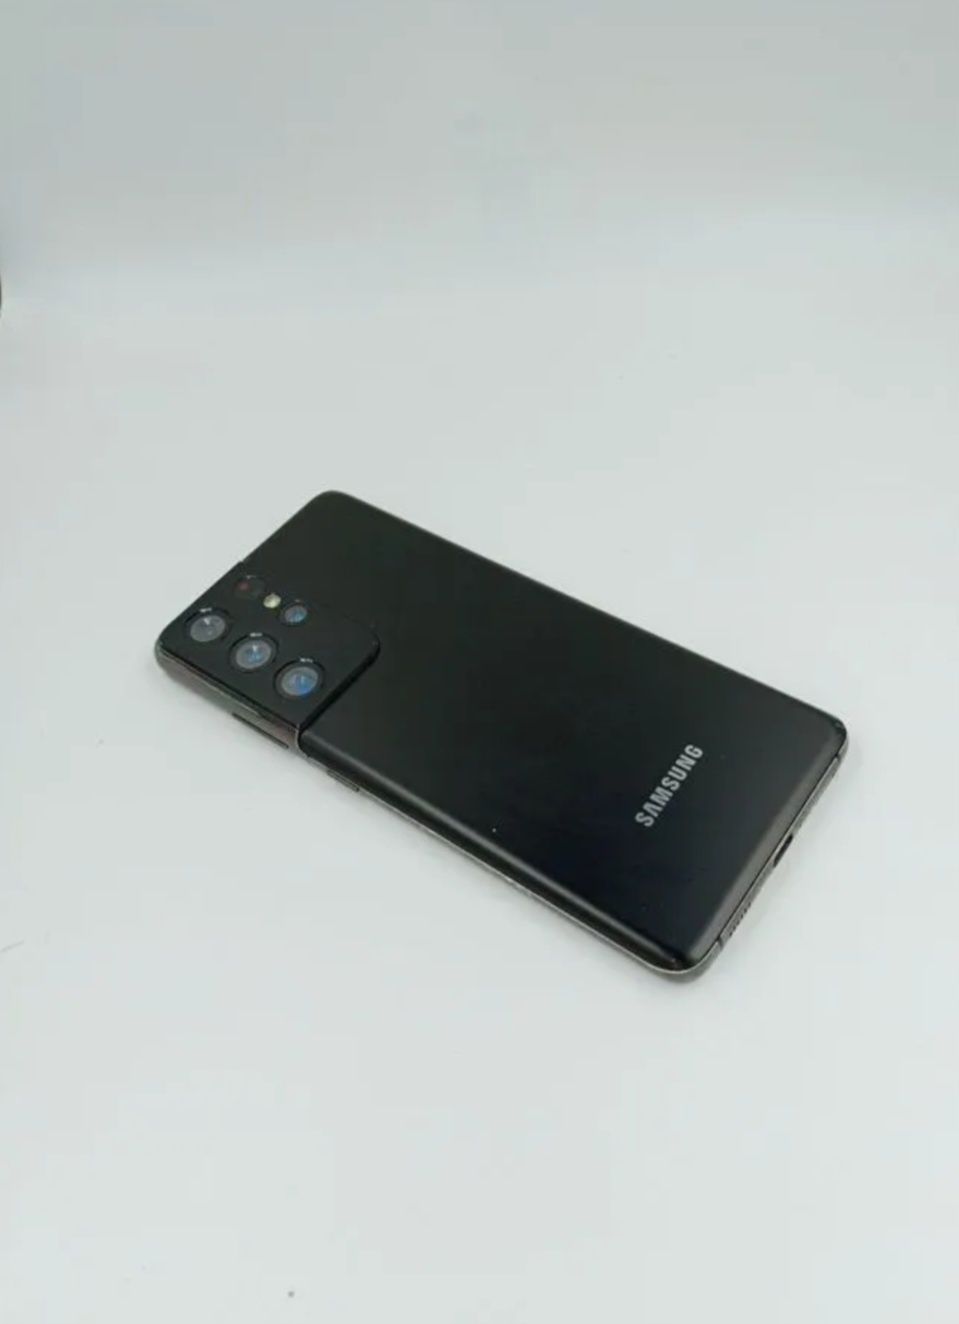 Samsung galaxy s21 ultra